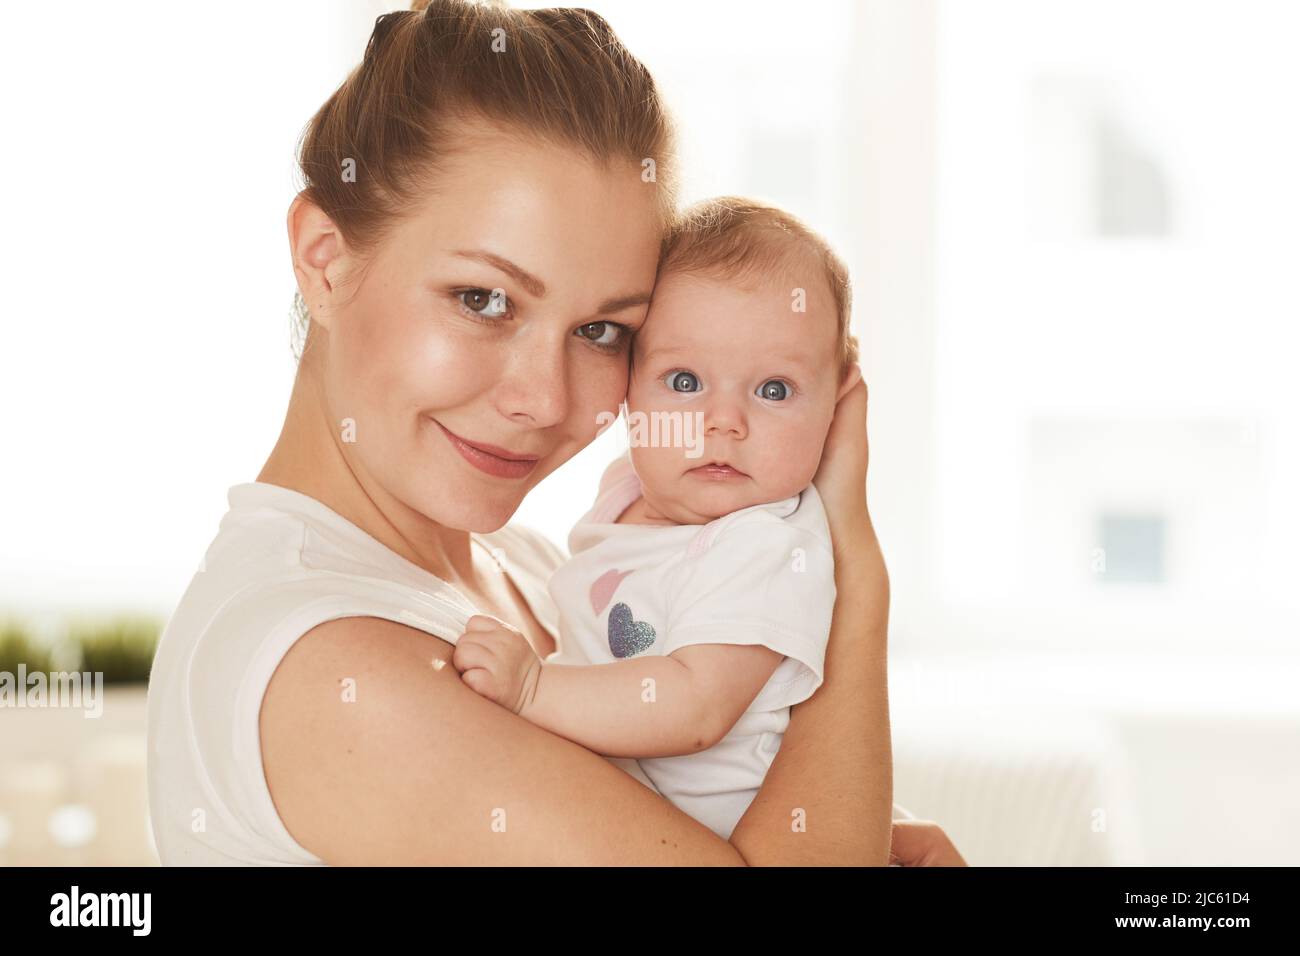 Junge lächelnde Mutter im weißen T-Shirt und ihr kleines Baby mit großen blauen Augen, die auf die Kamera schauen Stockfoto